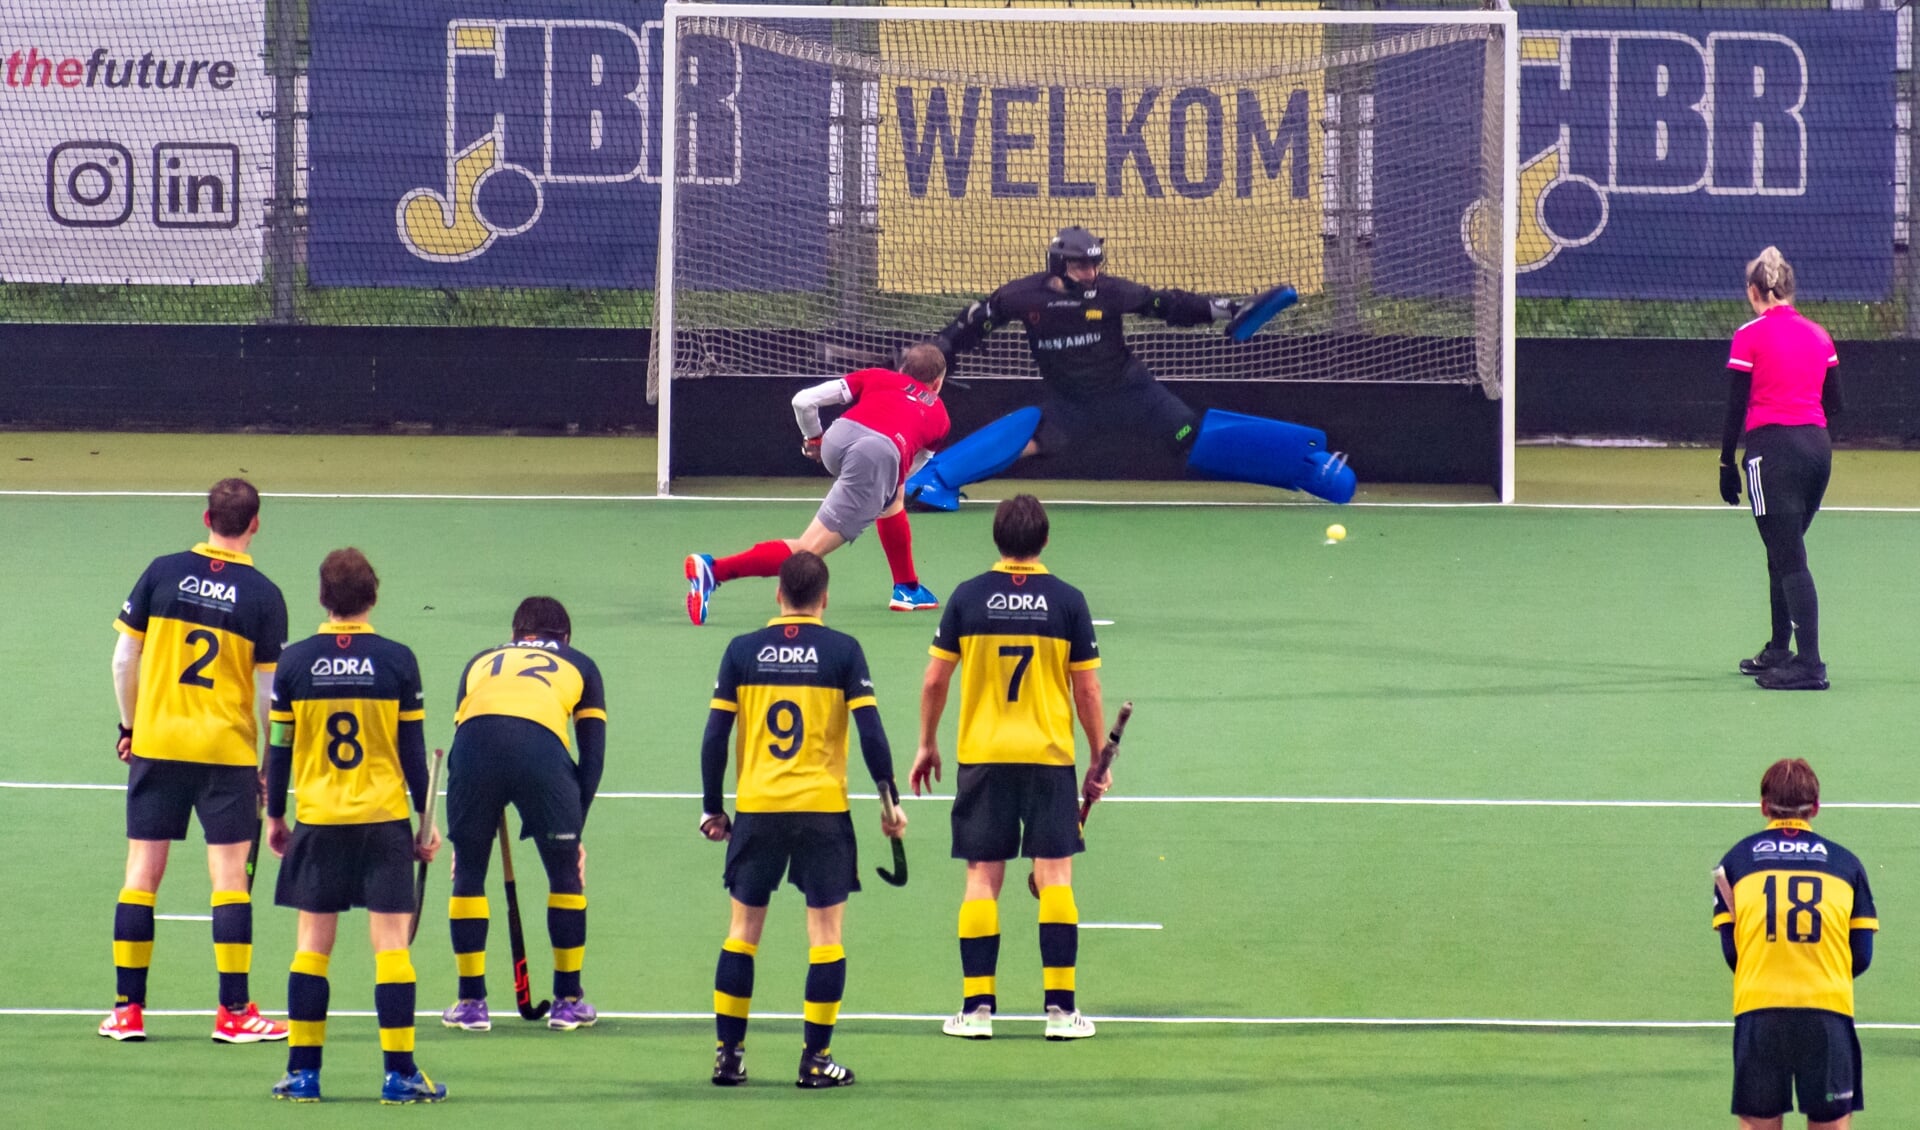 HBR-doelman Thomas Veerman strekt zich maximaal uit maar kan de 3-3 niet voorkomen. (Foto: Erik van Dort)